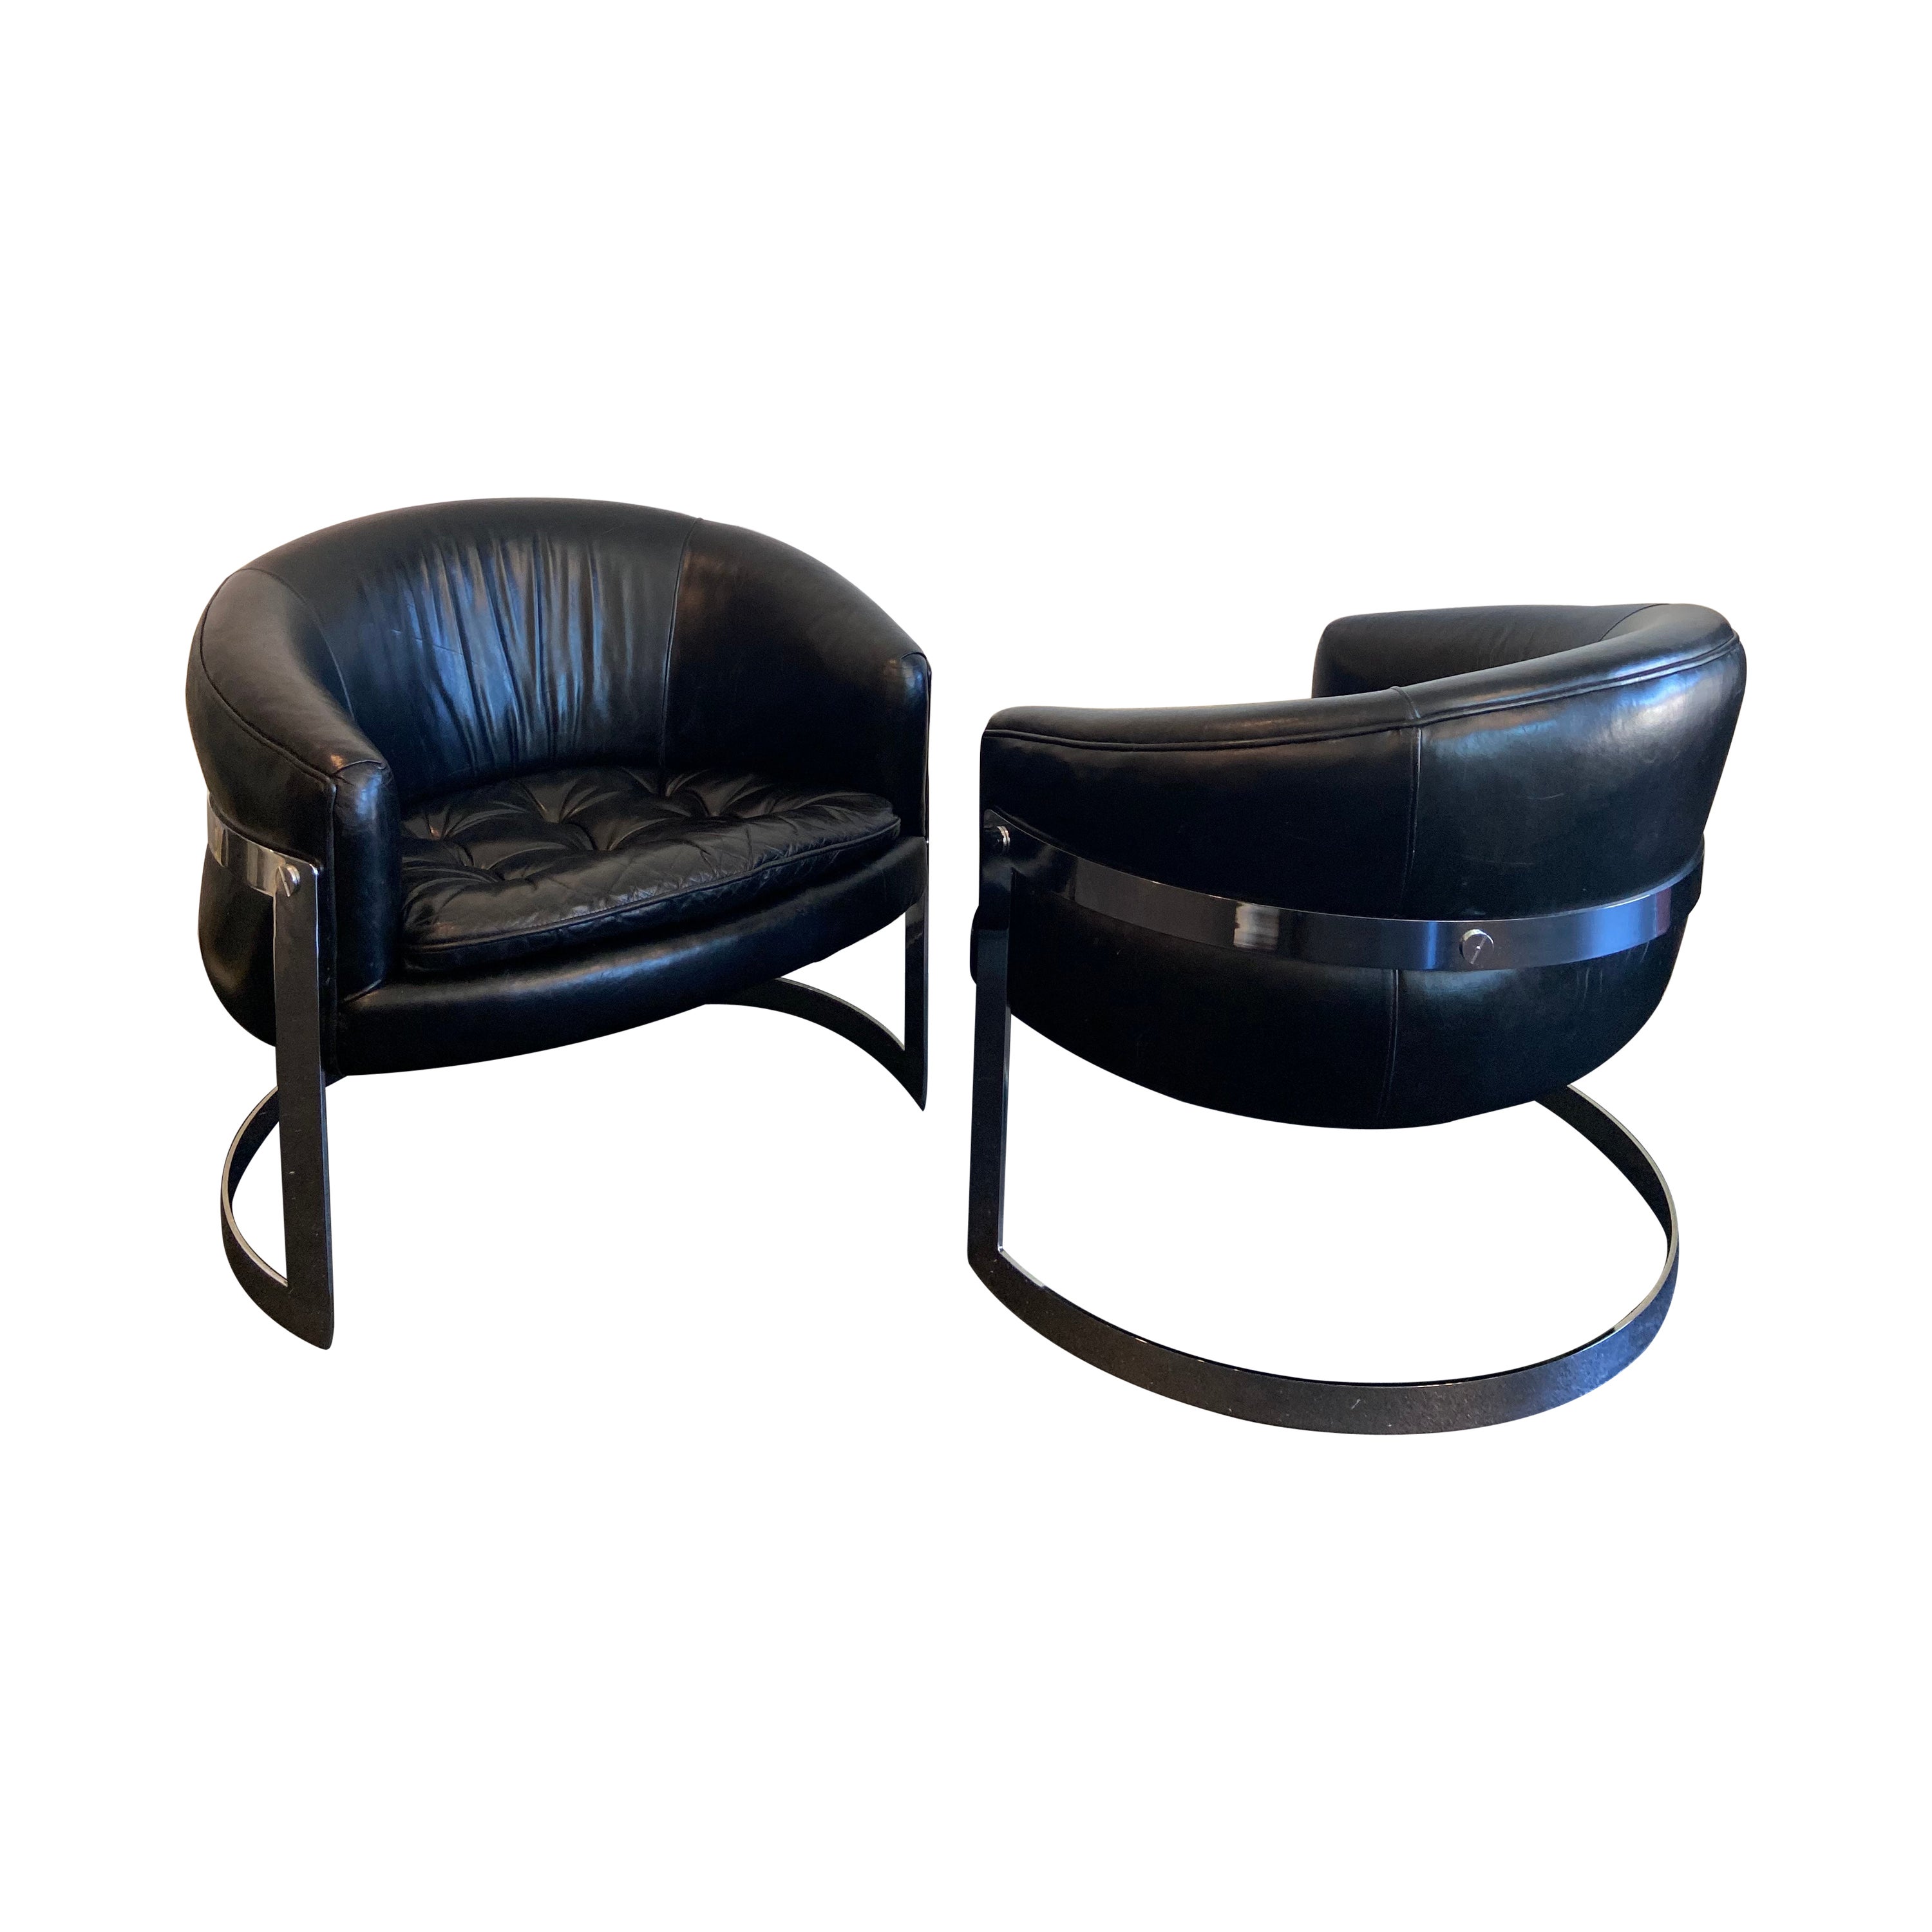 Flair Milo Baughman Stil Chrom Freischwinger Lounge Stühle in Leder- ein Paar